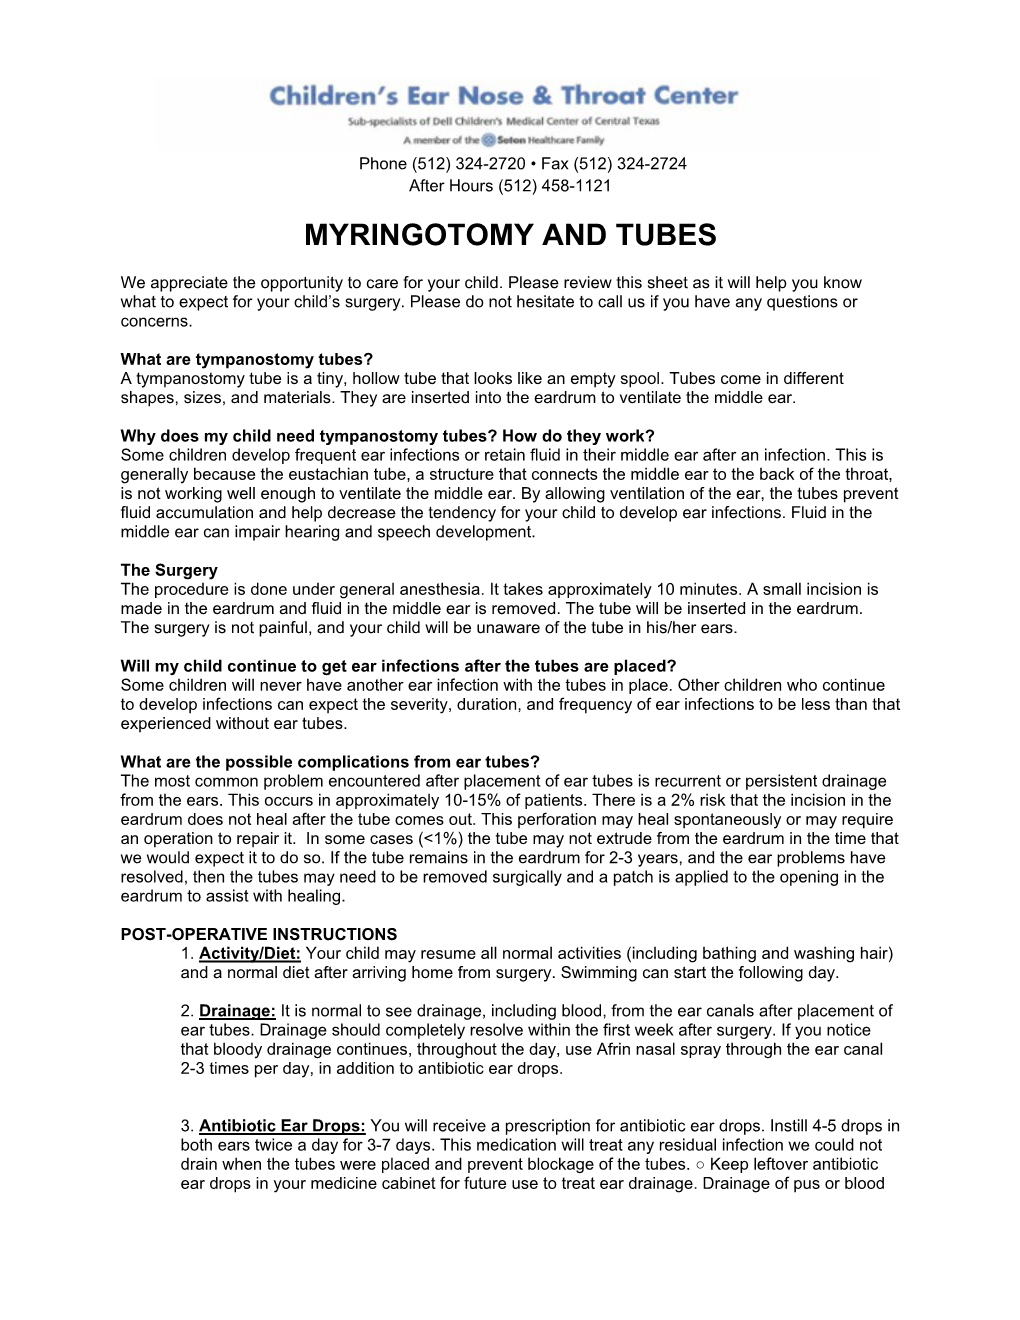 Myringotomy and Tubes